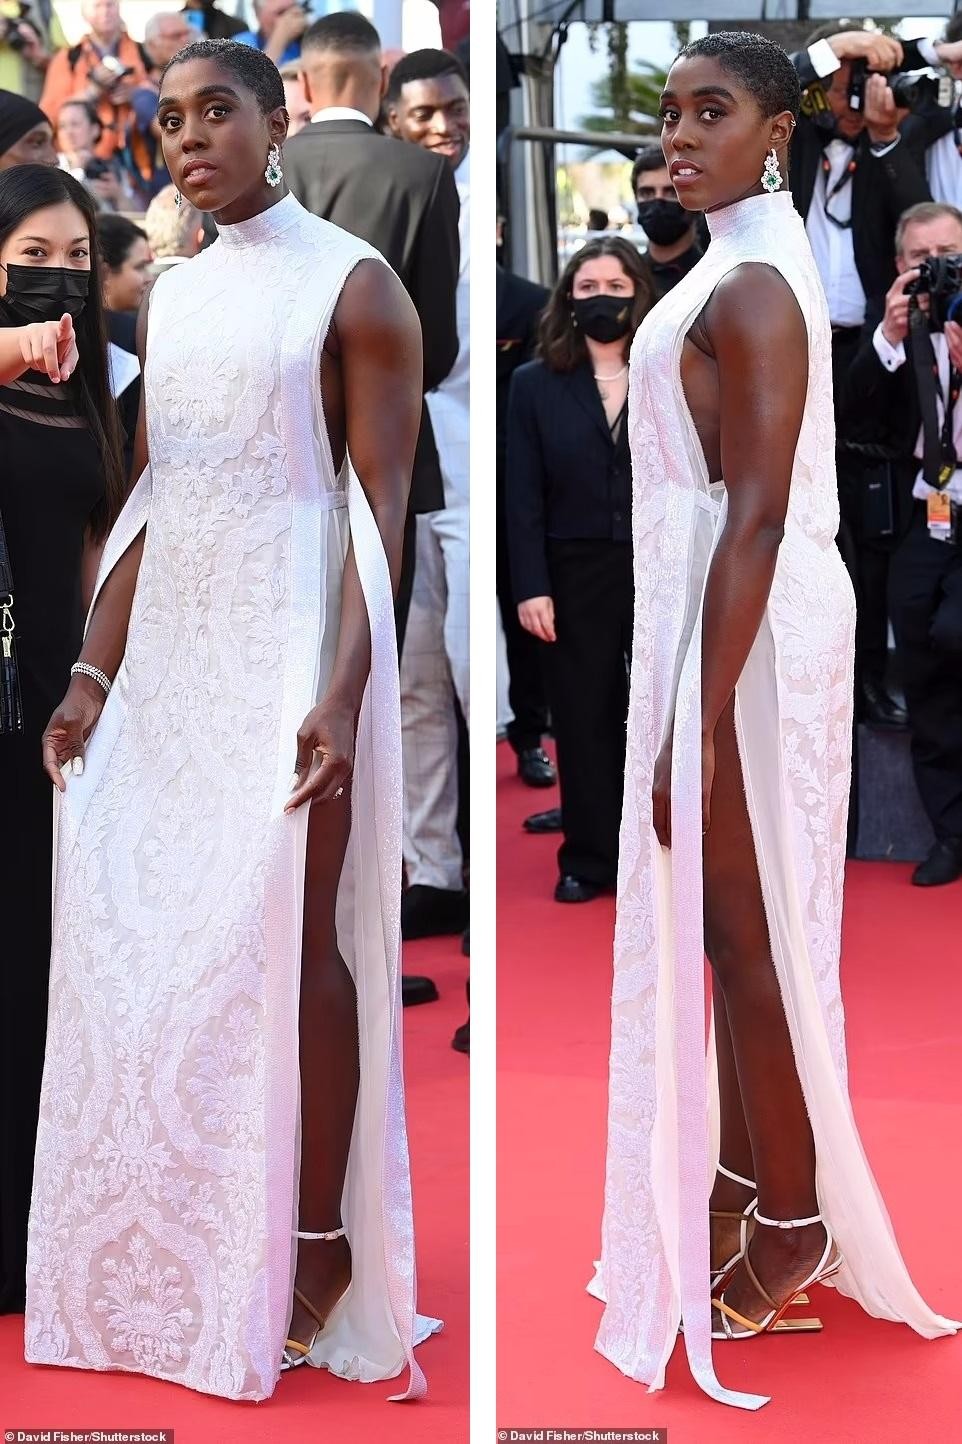 Thảm đỏ Cannes: Người mẫu Pháp Didi Stone 'hở bạo' khi diện mốt ngực trần ảnh 5